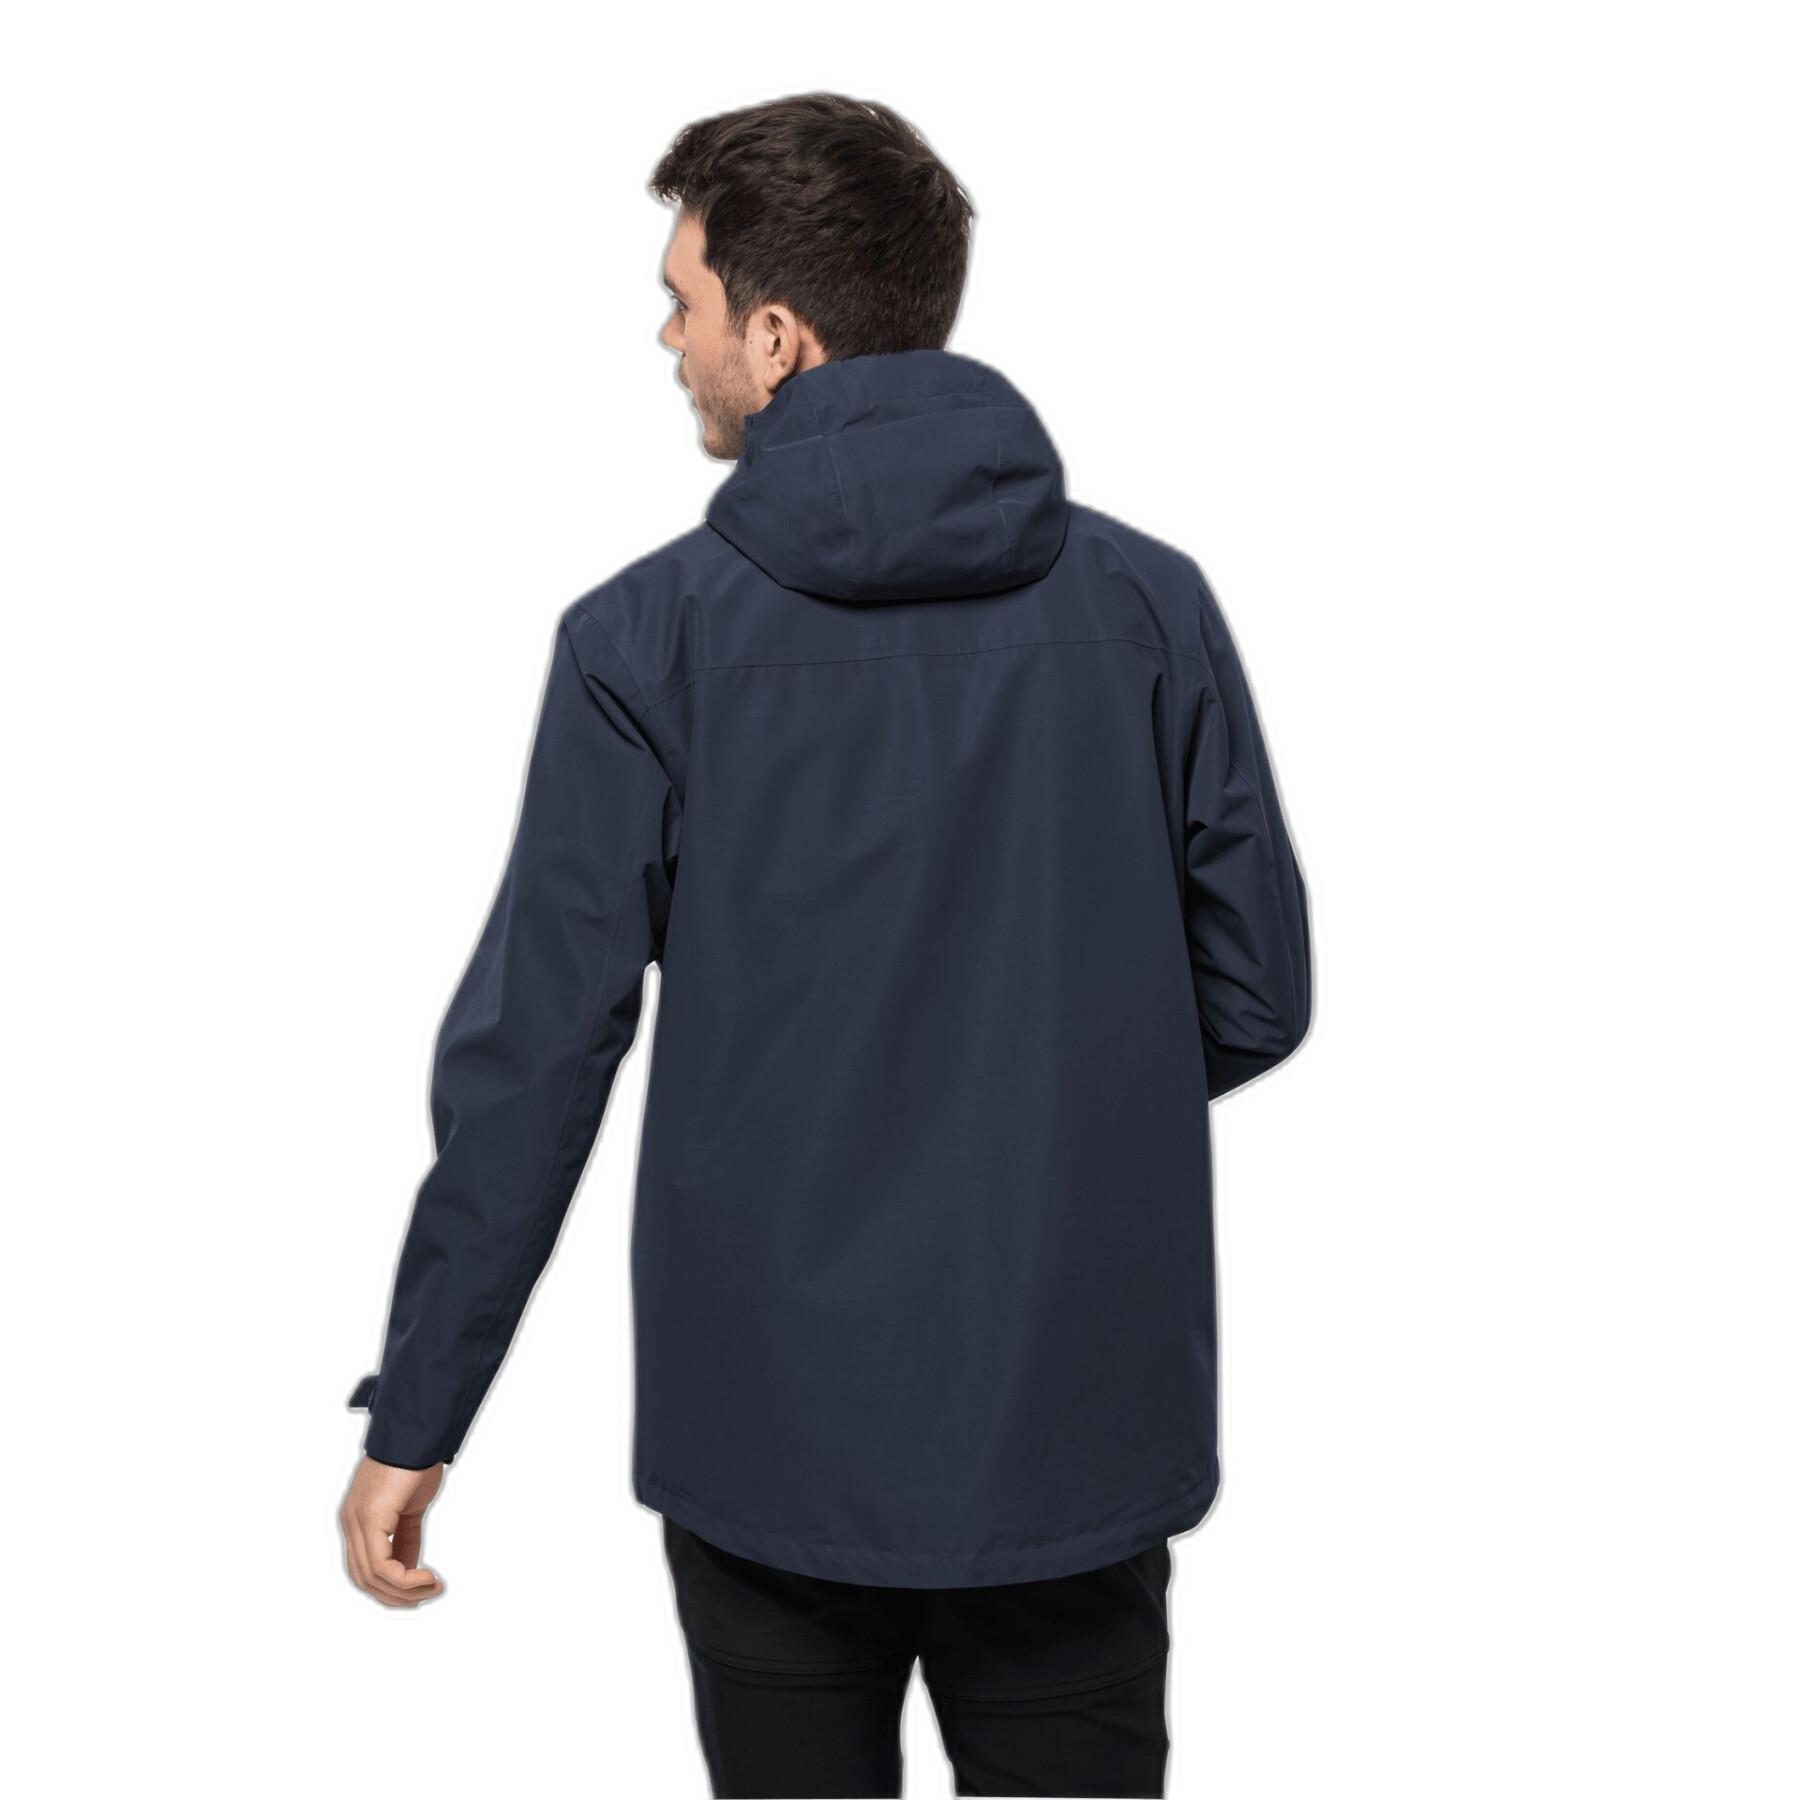 Waterproof jacket Jack Wolfskin Besler 2L